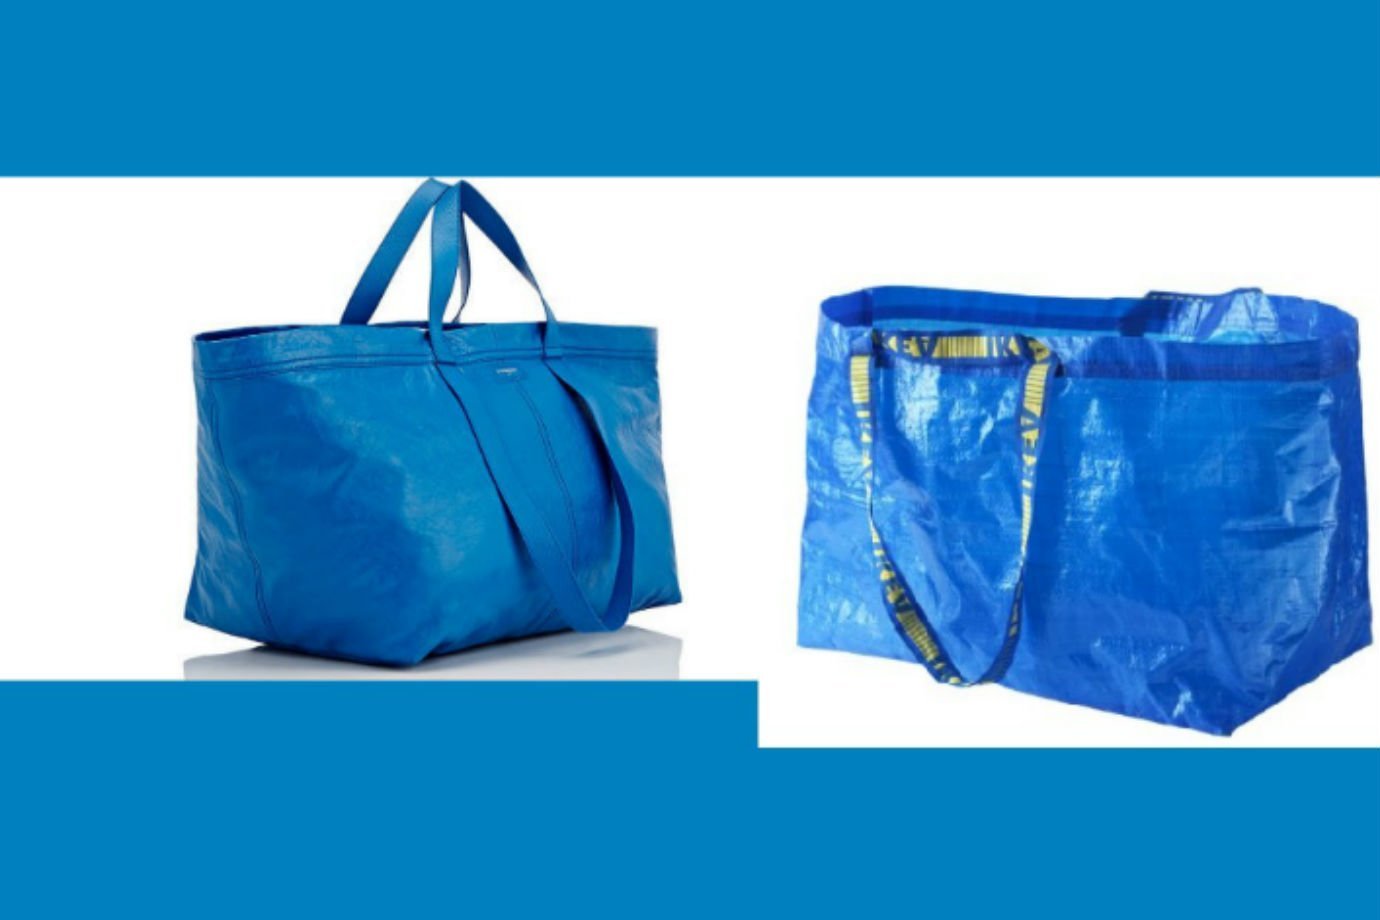 À esquerda, a bolsa da grife Balenciaga. À direita, a sacola de compras da Ikea: diferença de alguns milhares de dólares